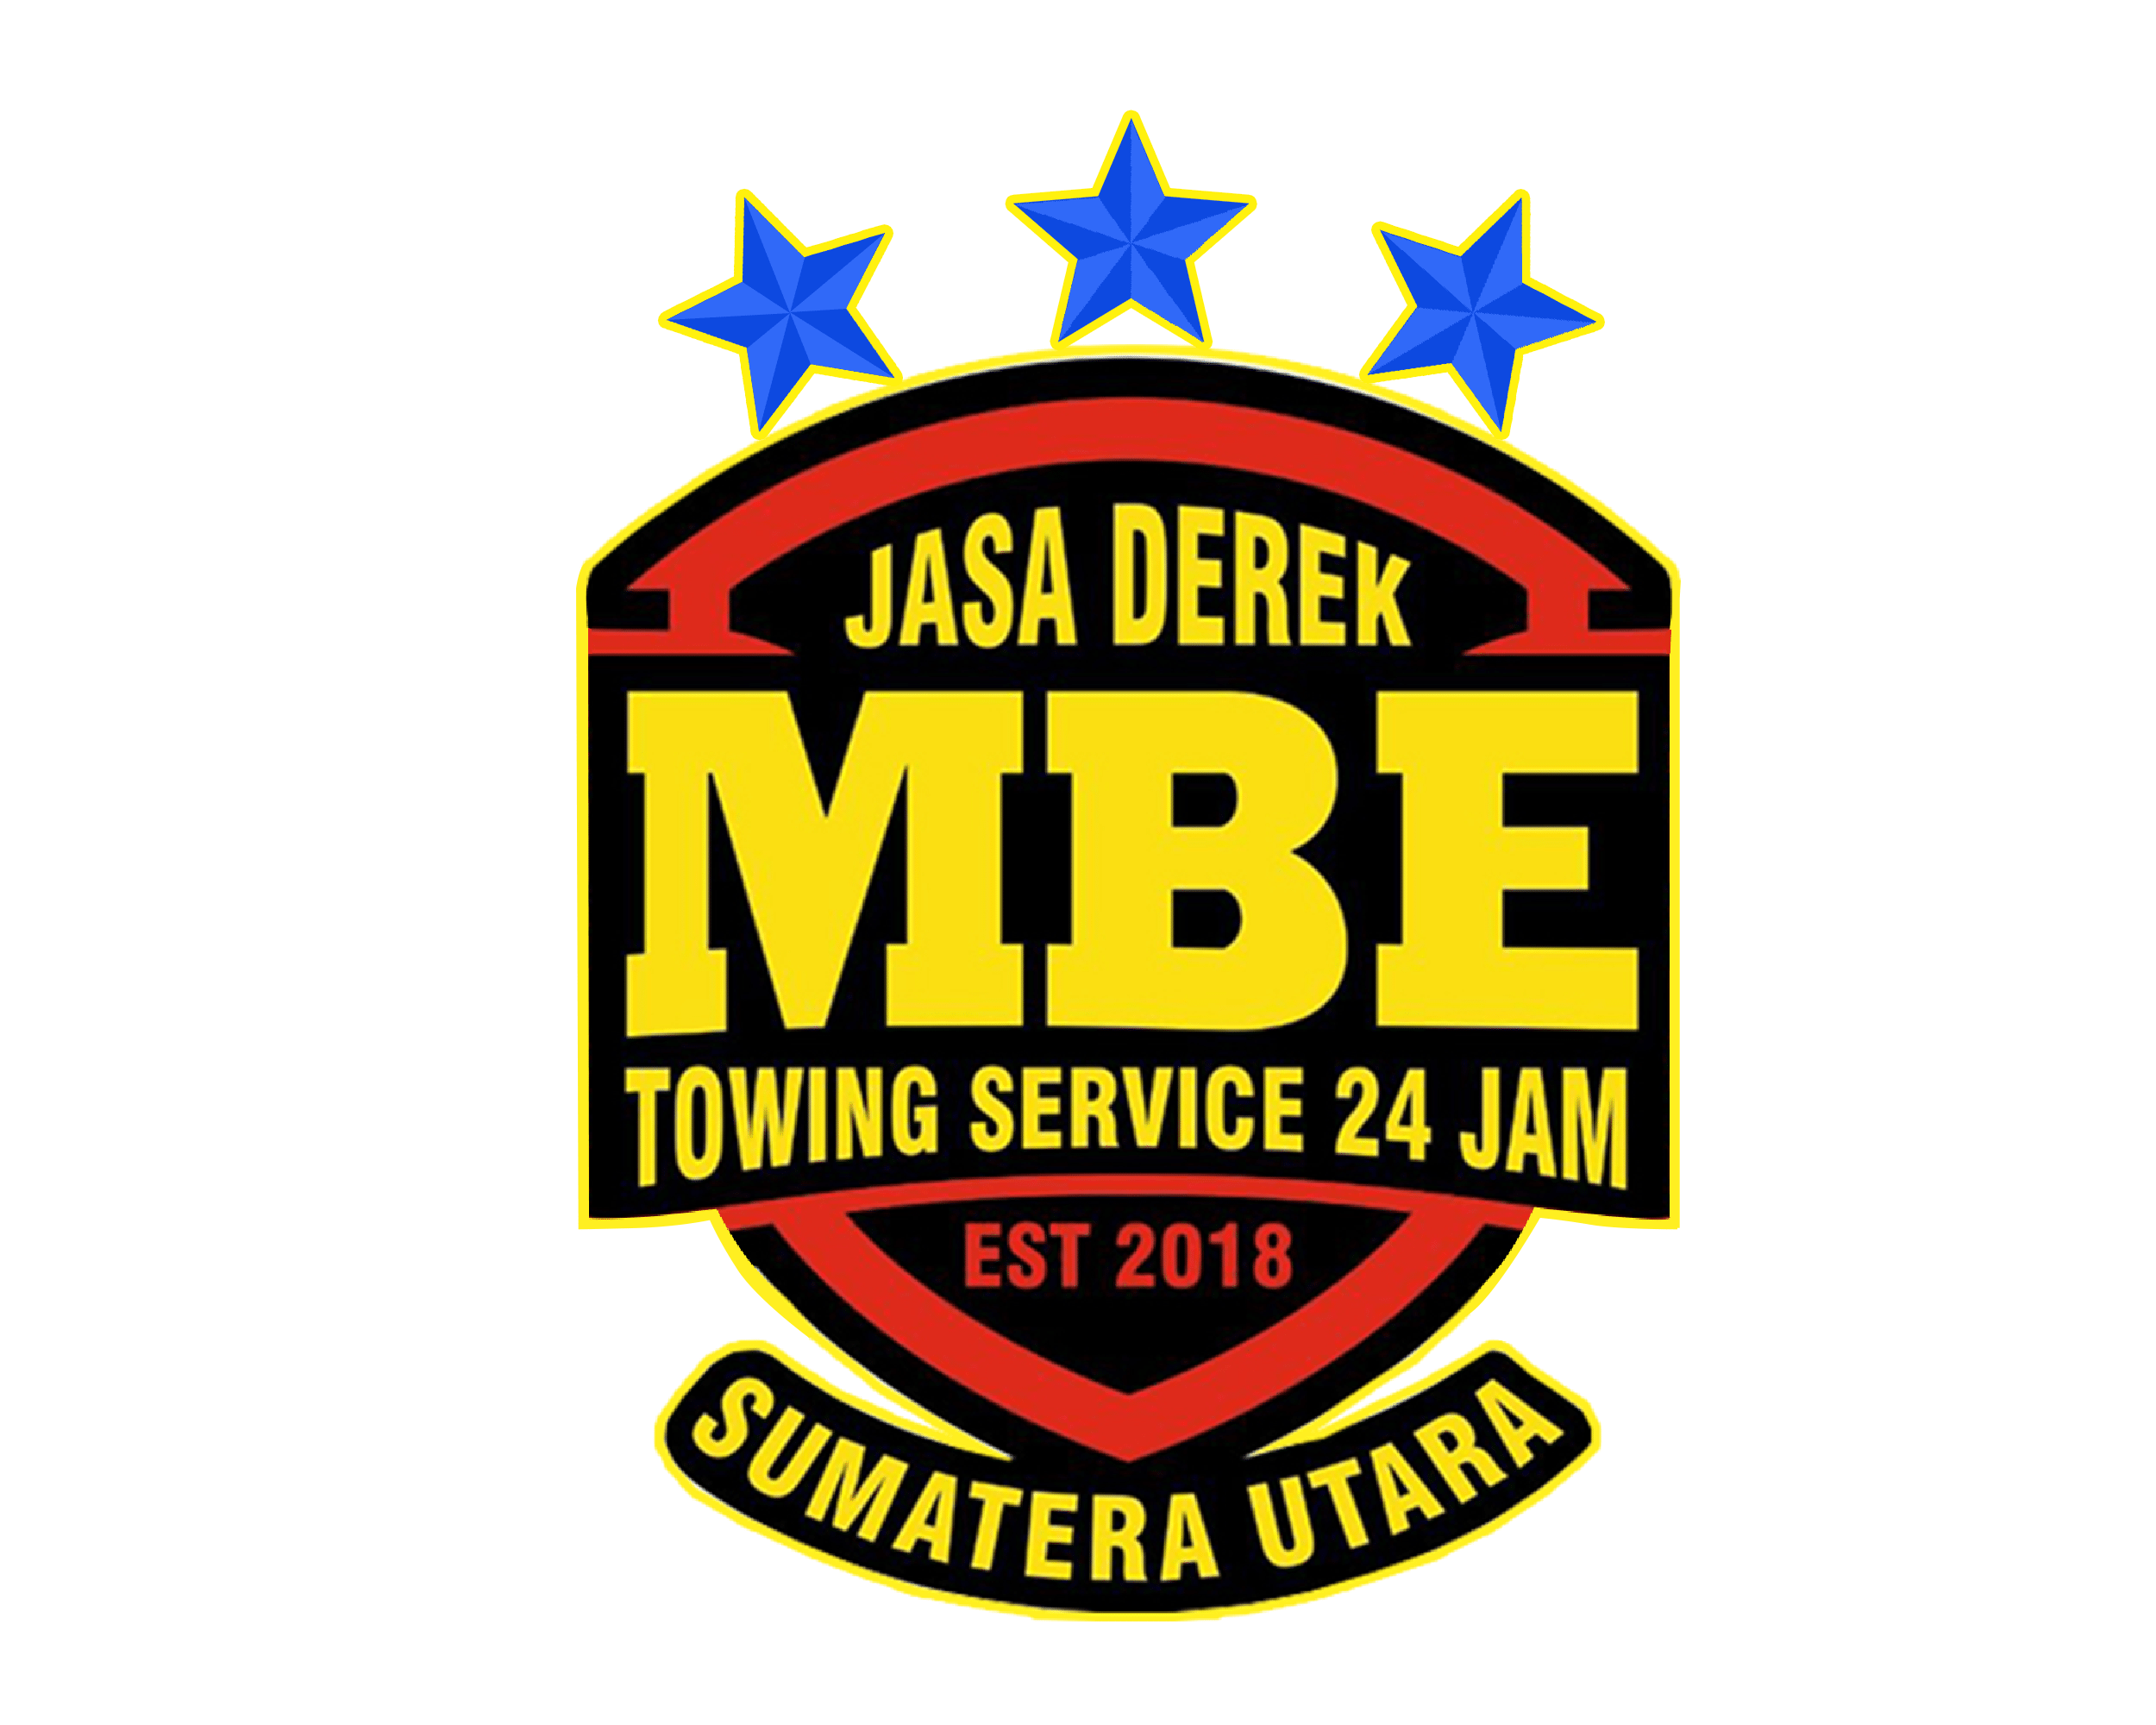 Logo Jasa Derek